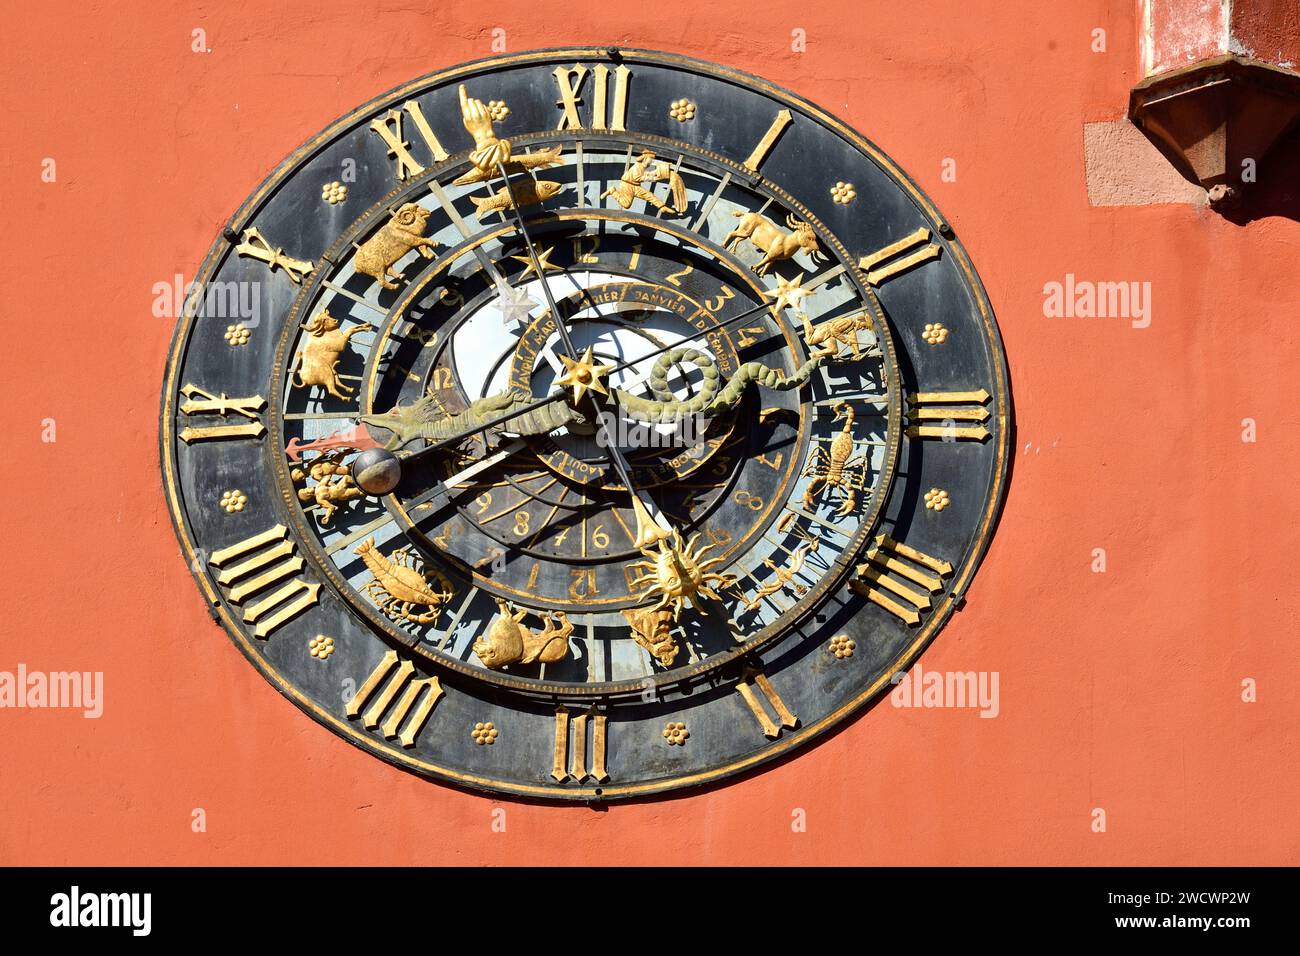 Frankreich, Bas Rhin, Haguenau, Place Joseph Thierry, ehemalige Kanzlei von 1484 jetzt das elsässische Museum und das Tourismusbüro, astronomische Uhr von 1904, Kopie der Astrolabium-Uhr aus dem Jahr 1581 in Ulm Stockfoto